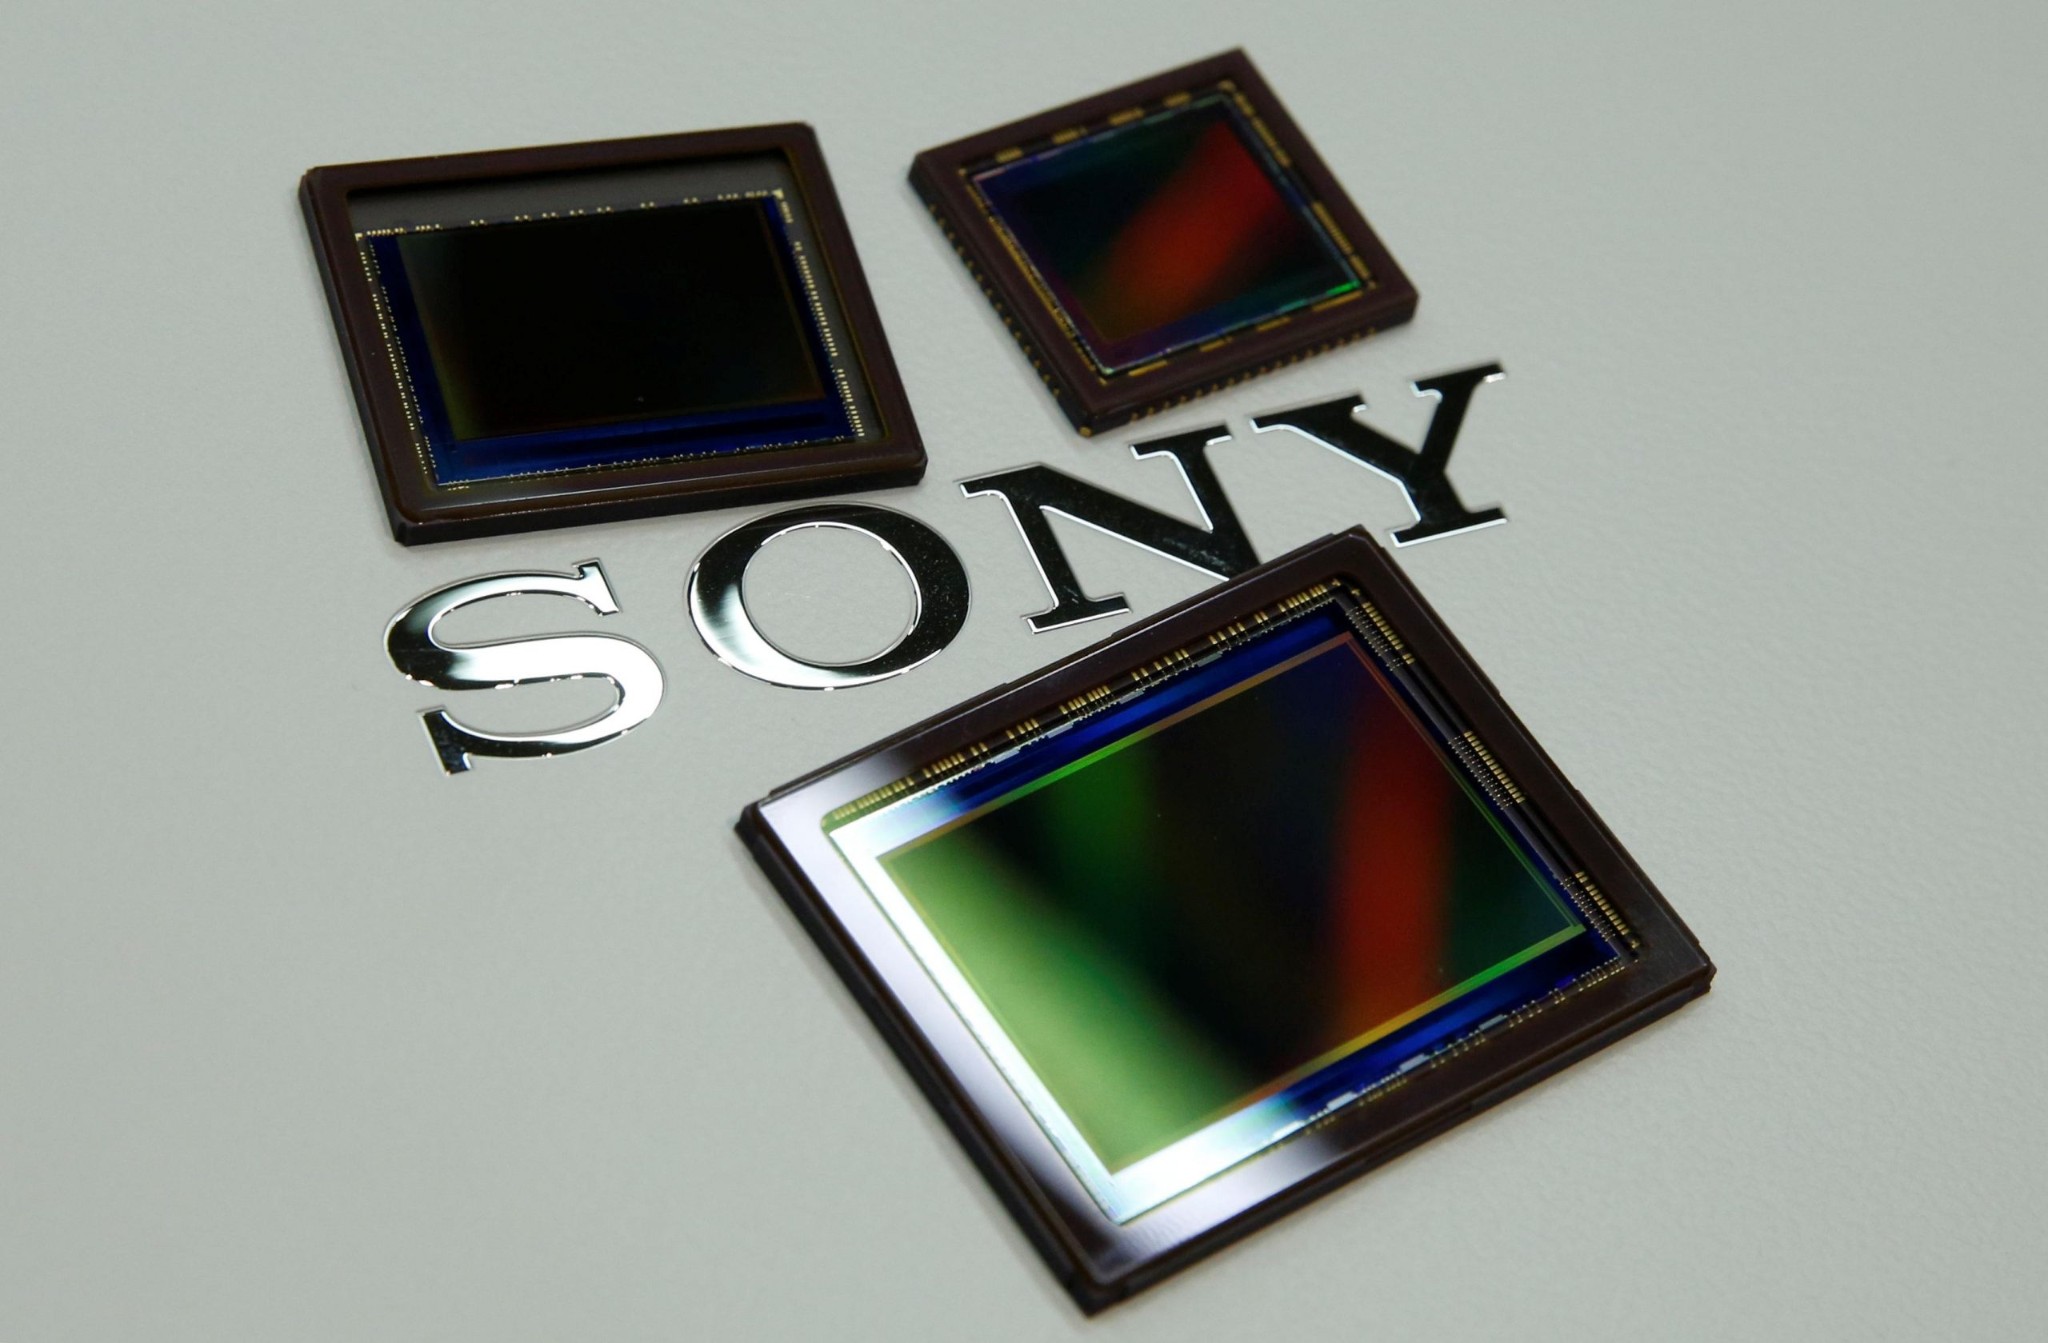 Mảng kinh doanh cảm biến ảnh của Sony đang thống lĩnh thị trường và các máy ảnh từ Sony cũng hưởng lợi từ điều này